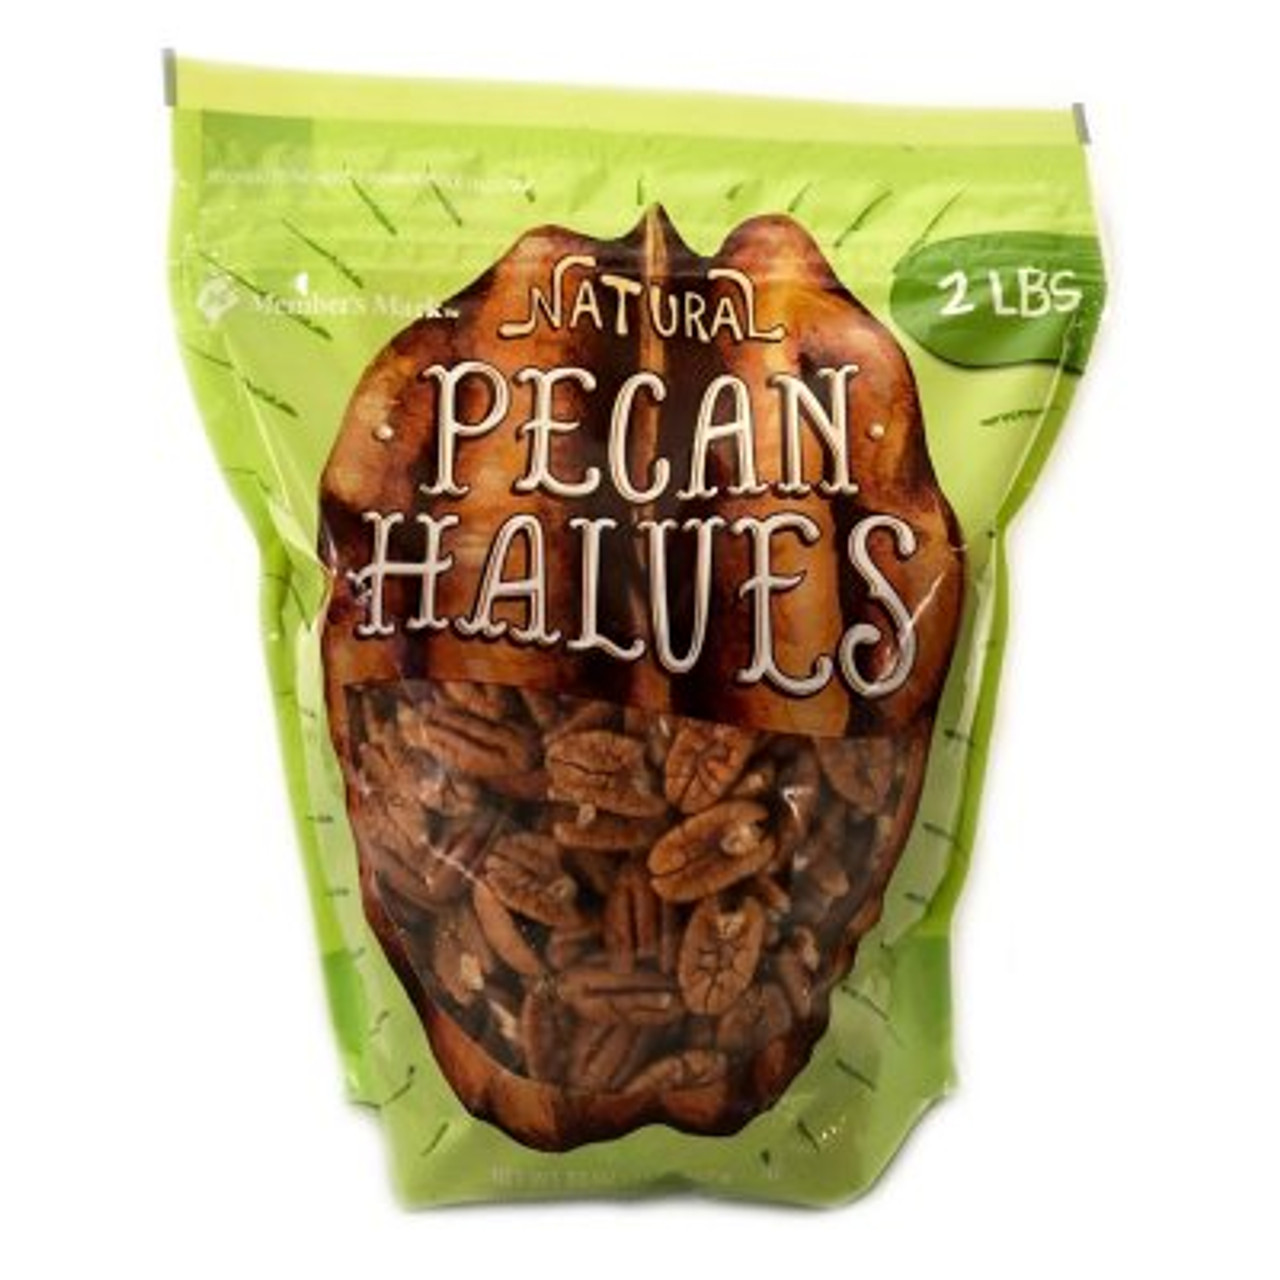 Member's Mark Natural Pecan Halves (2 lbs.) - *In Store